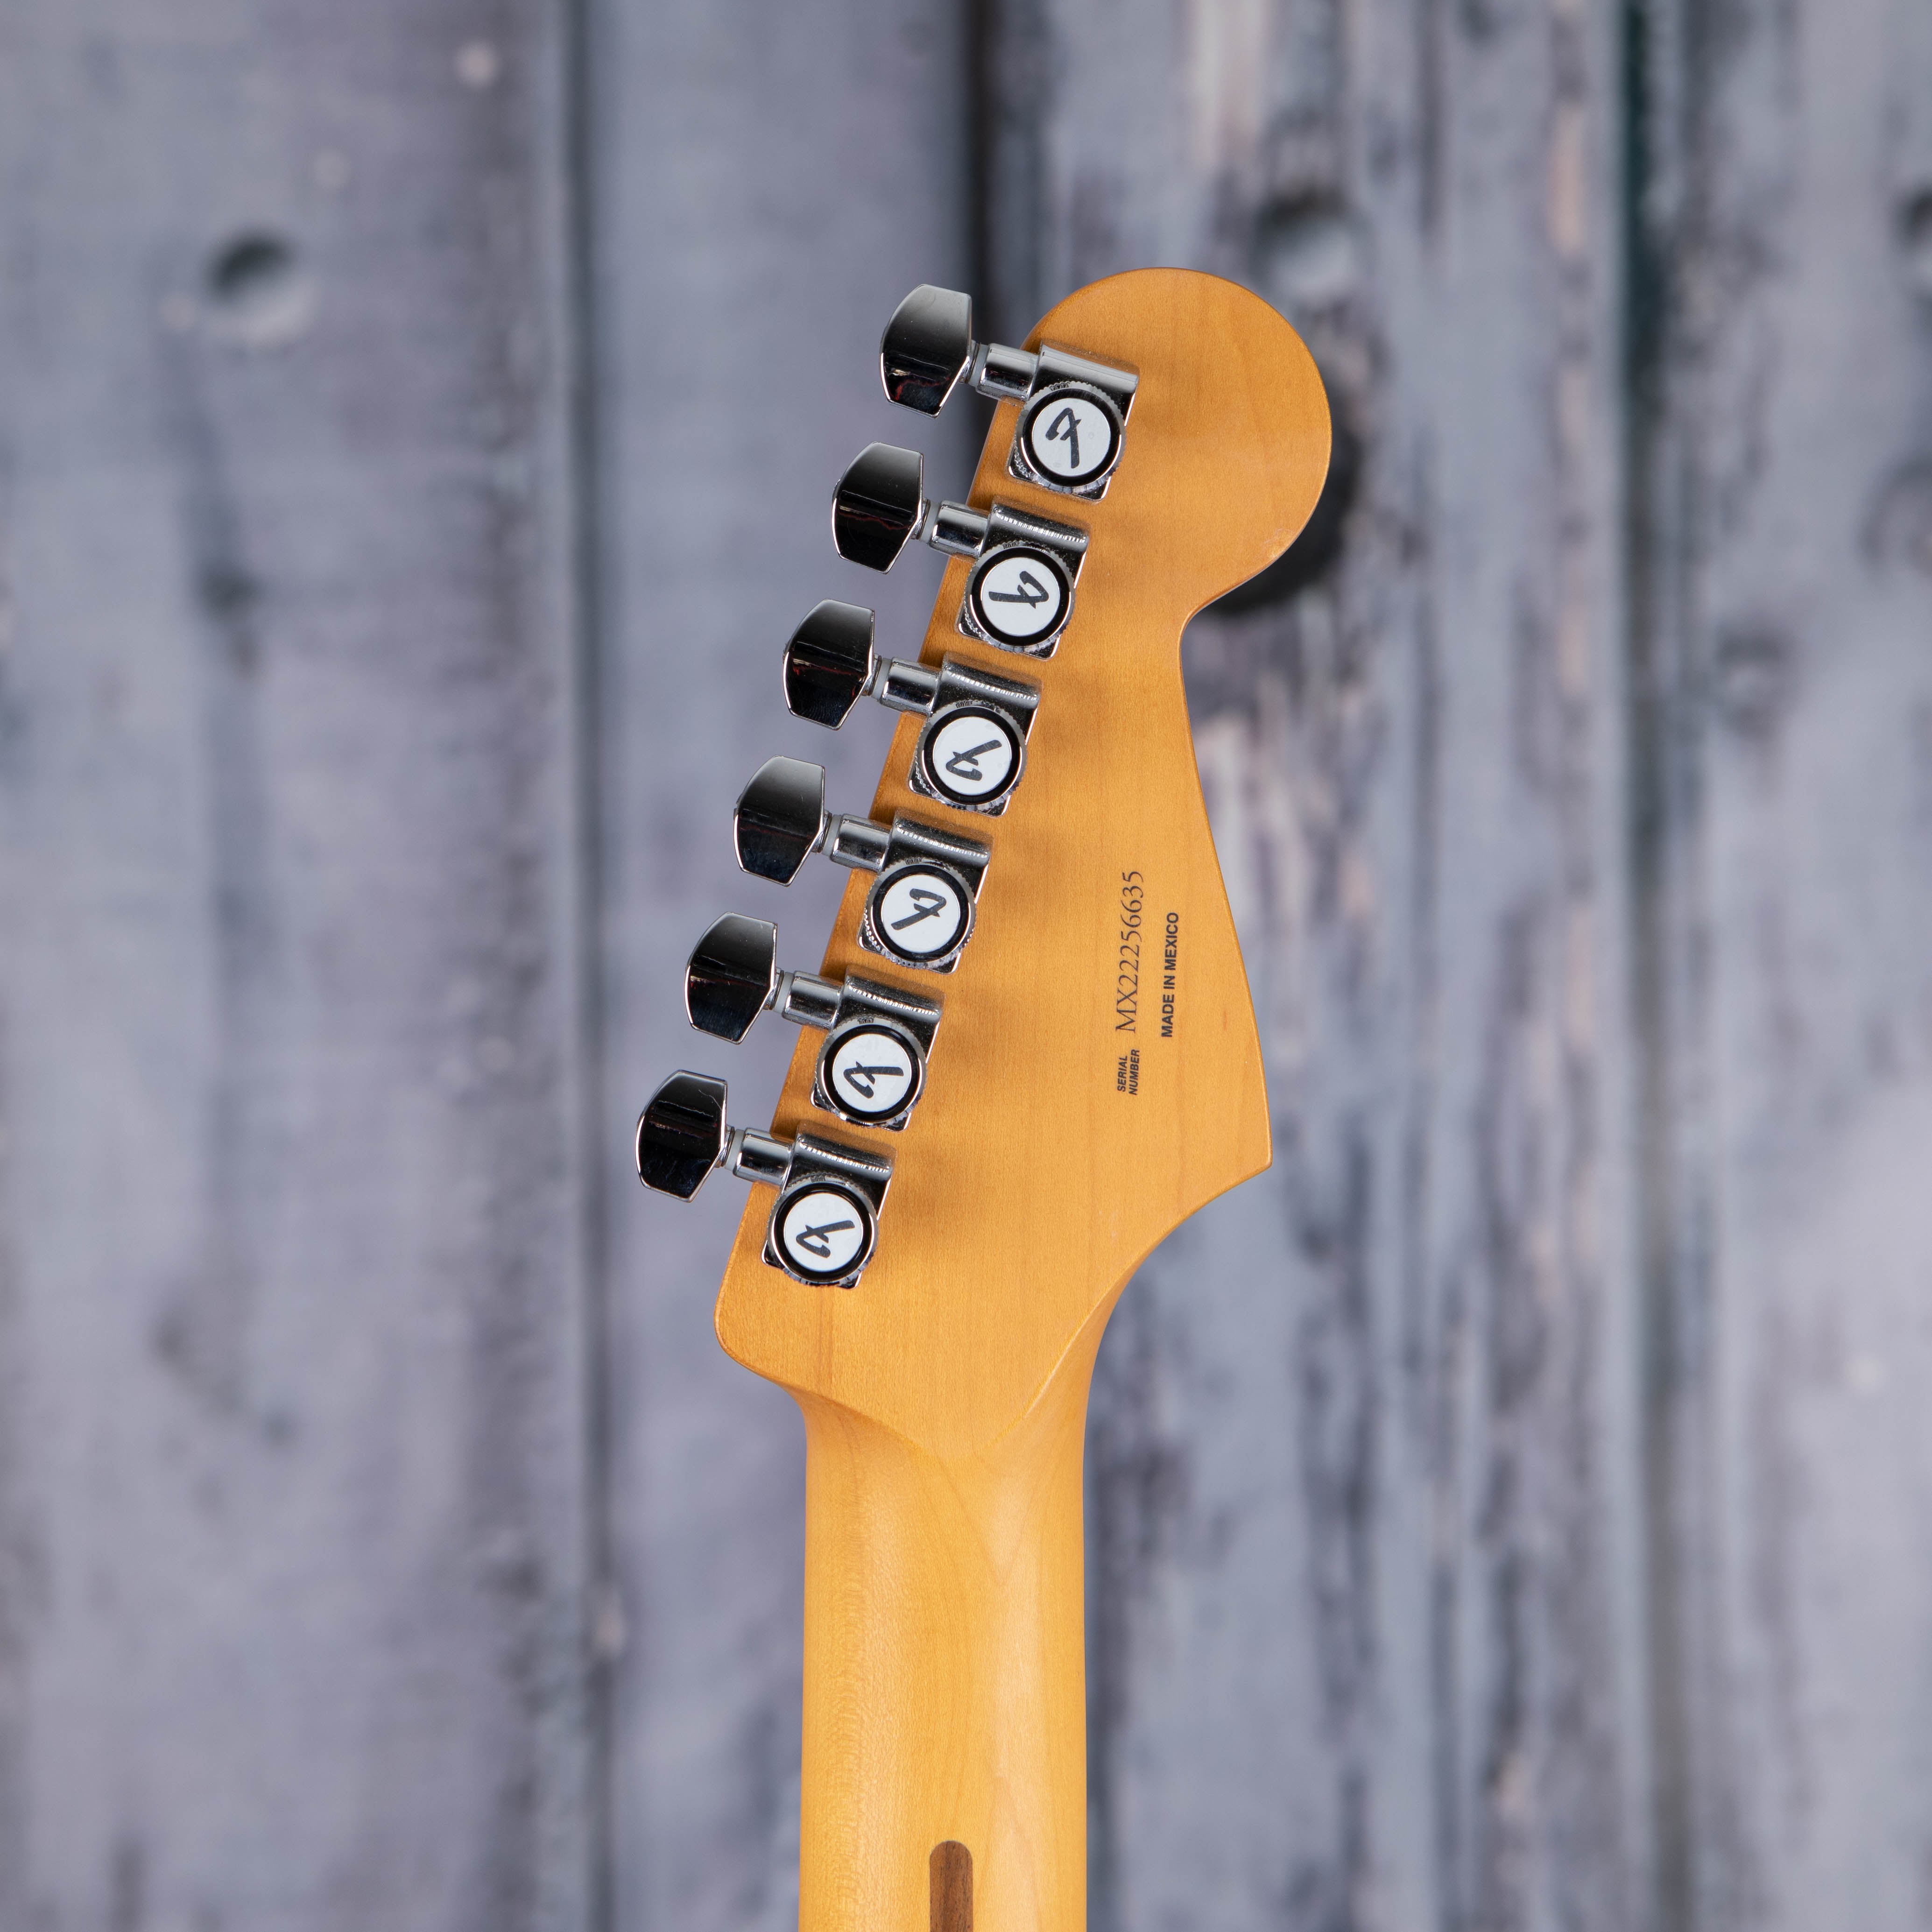 Fender Player Plus Stratocaster Left-Handed Electric Guitar, 3-Color Sunburst, back headstock